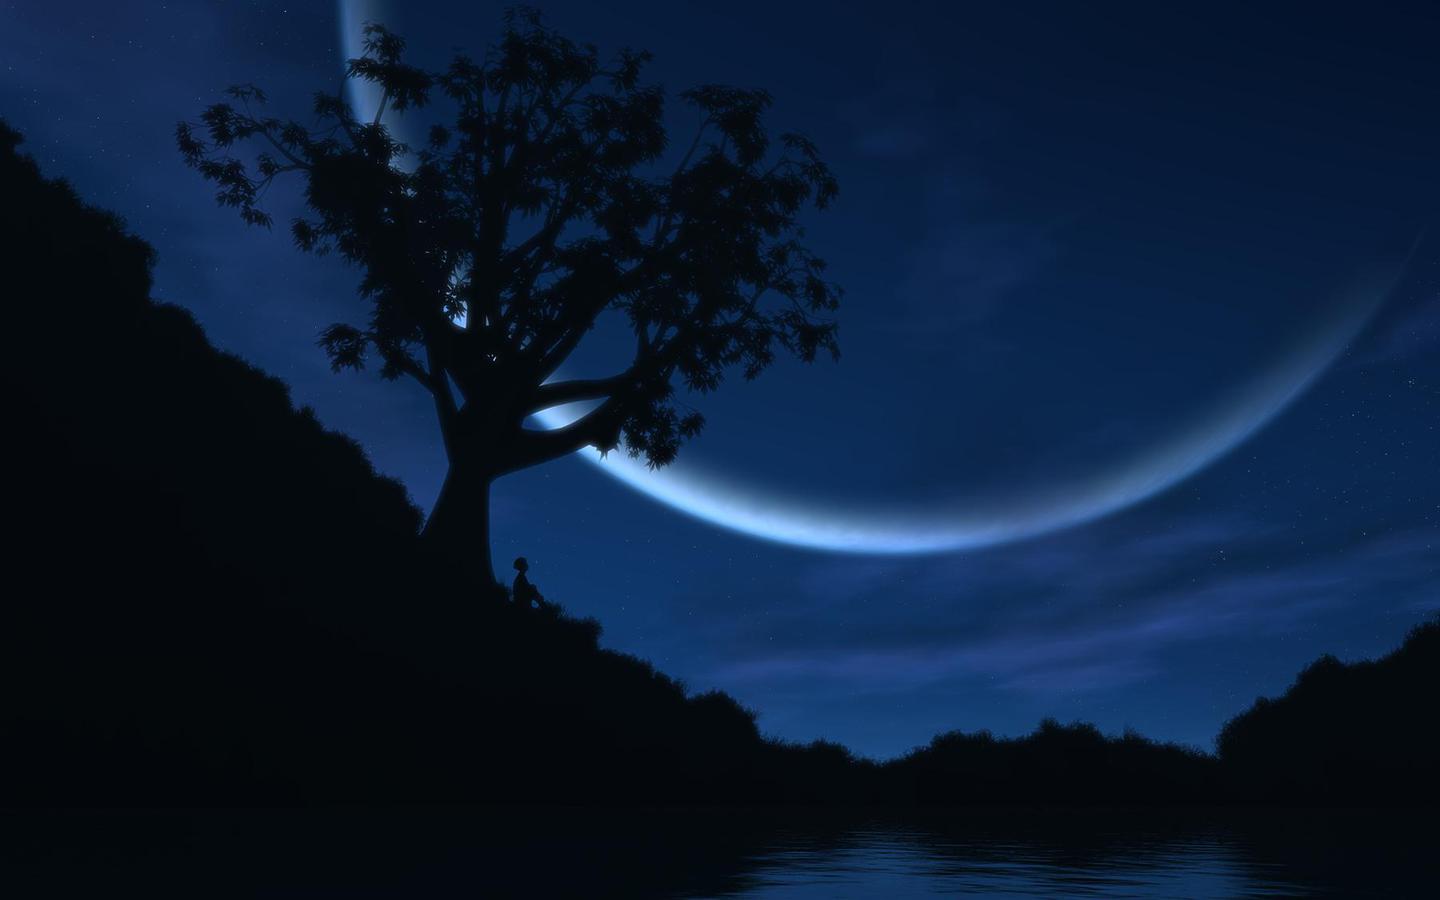 cielo notturno wallpaper hd,cielo,natura,blu,chiaro di luna,notte